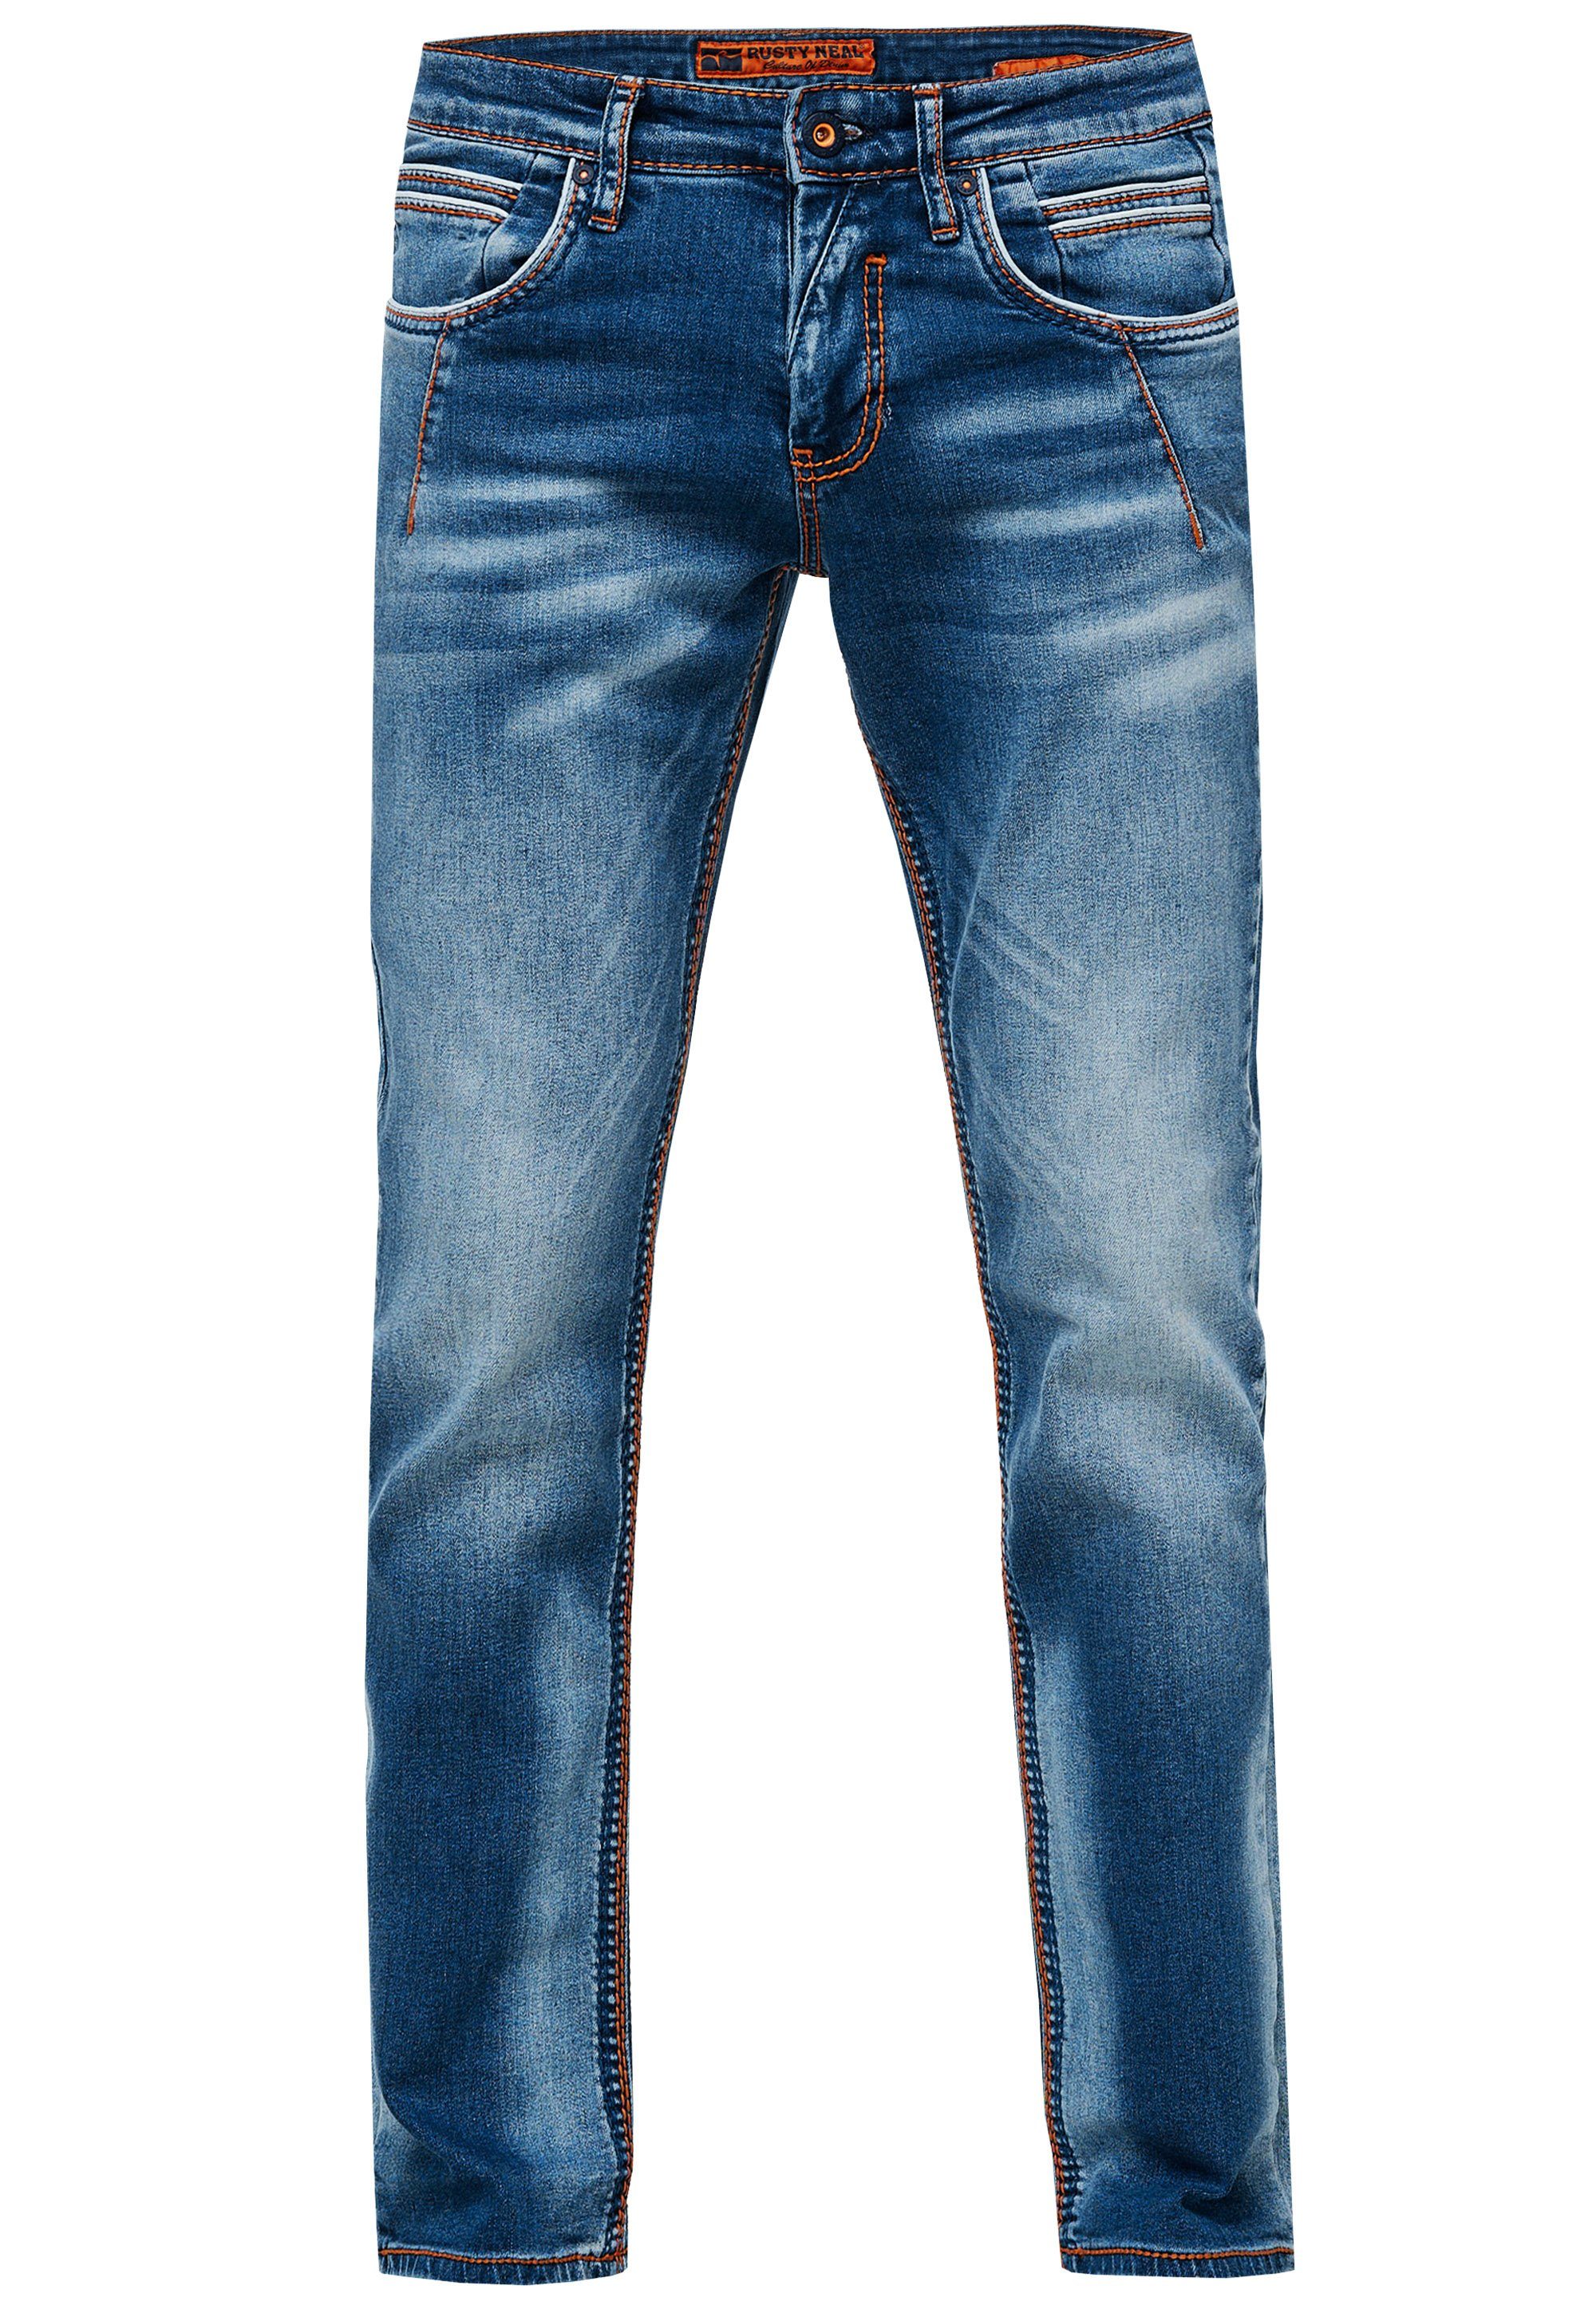 Rusty Neal Straight-Jeans angesagten Ziernähten mit YORK 51 NEW